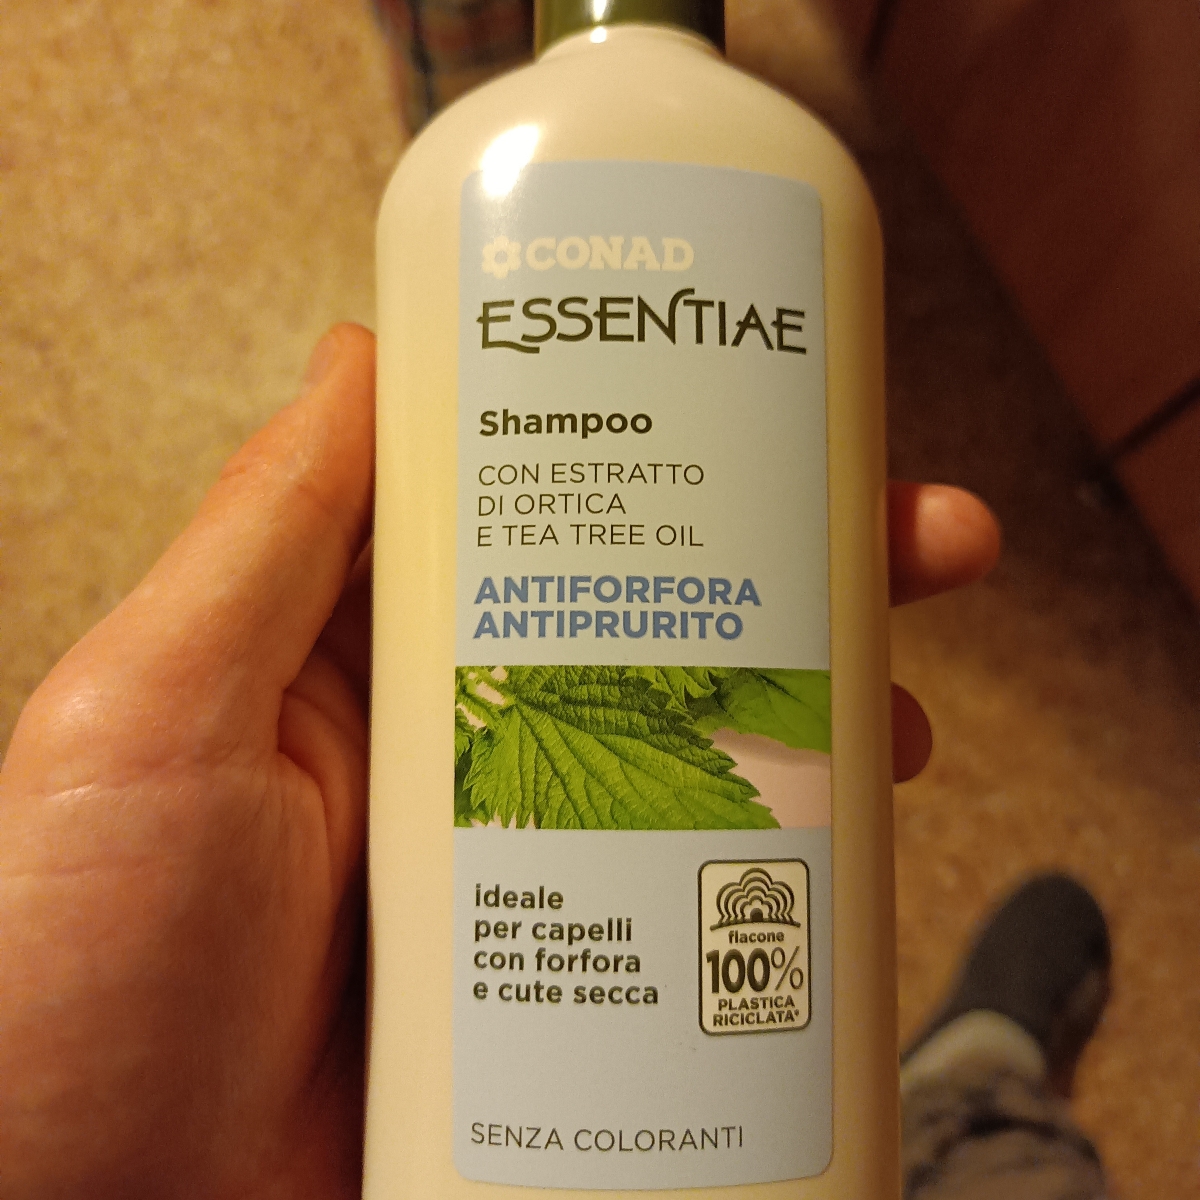 Conad Essentiae Shampoo con estratto di ortica e tea tree oil Review |  abillion